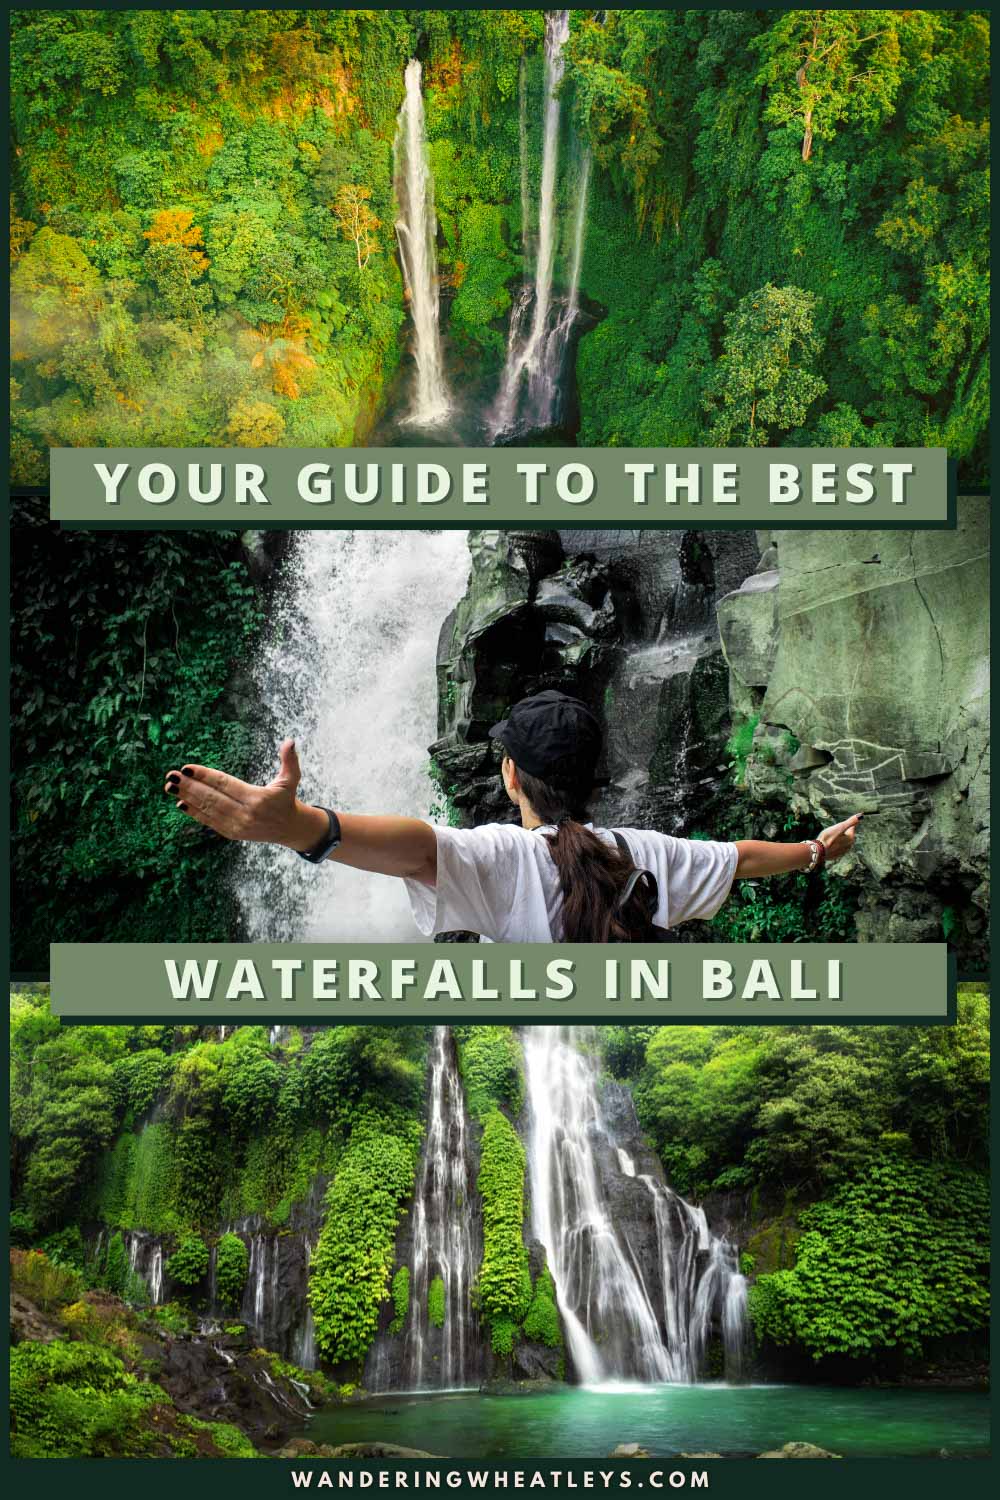 The Best Waterfalls in Bali